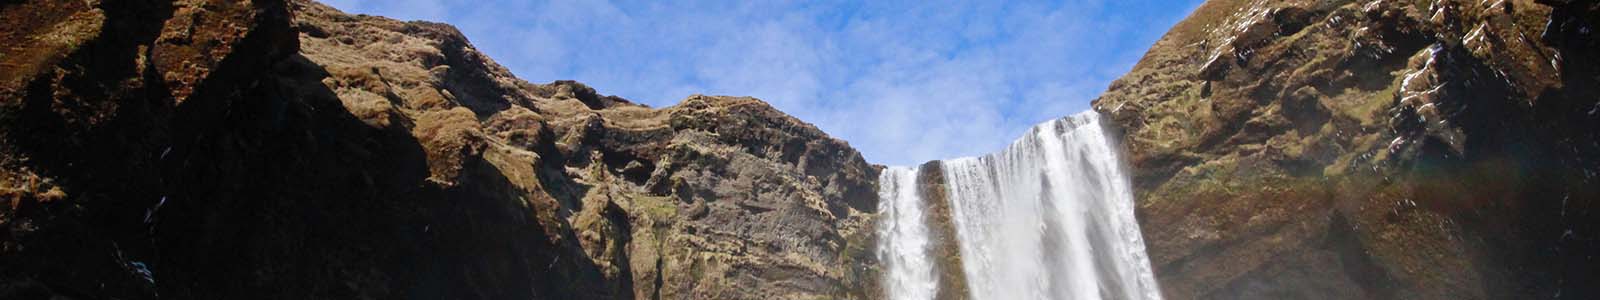 De mooiste IJslandse hotspots, highlights en bezienswaardigheden